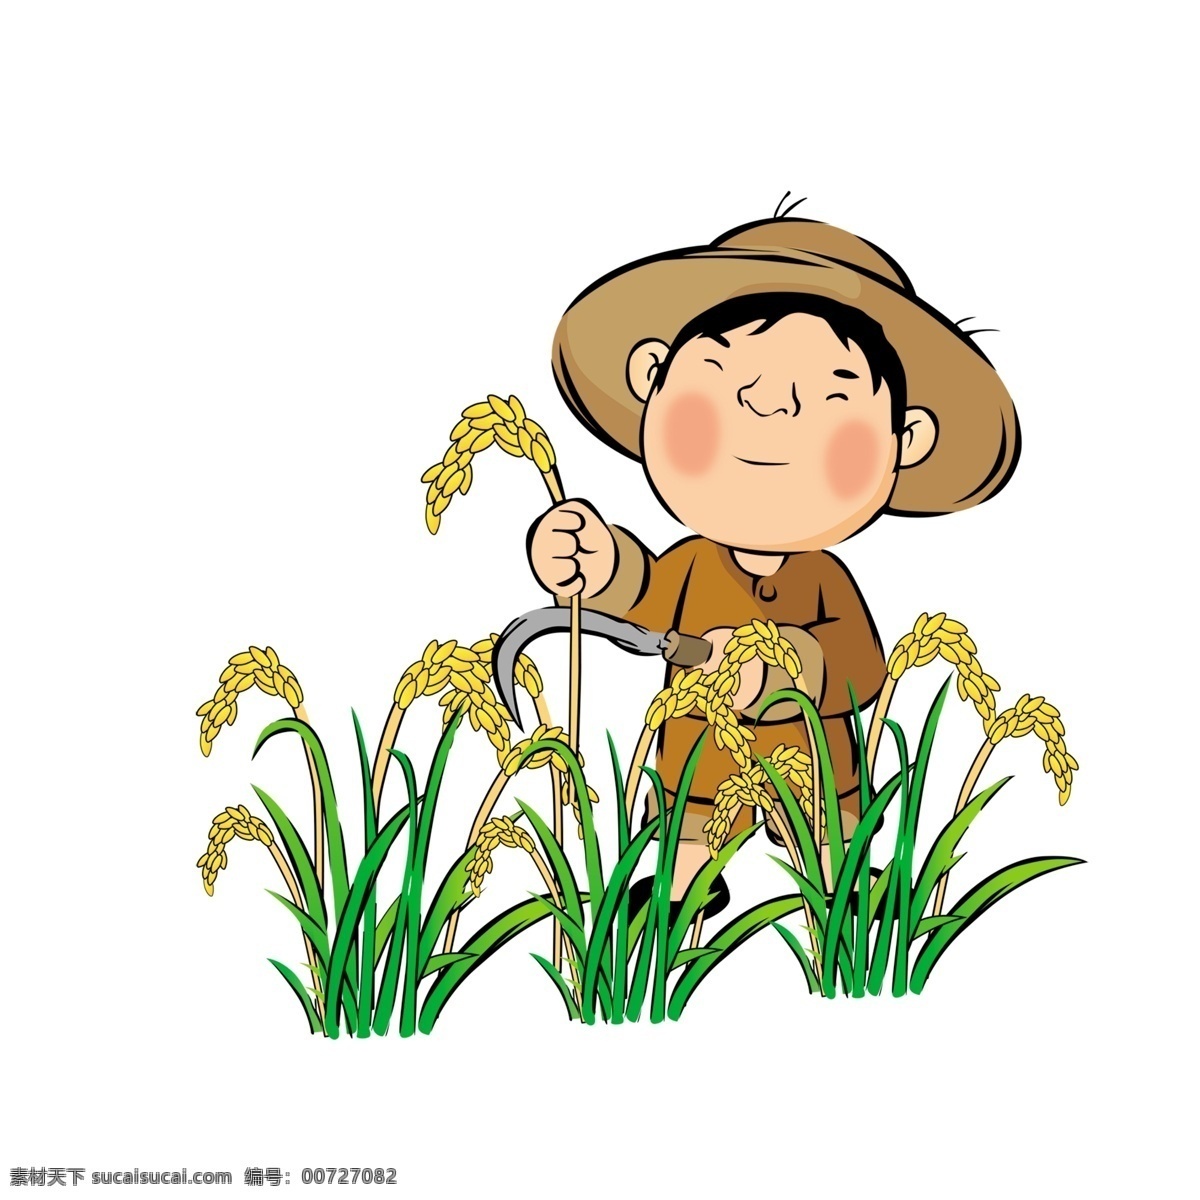 卡通 农民 水稻 大米 壮秧剂 小孩 镰刀 包装设计